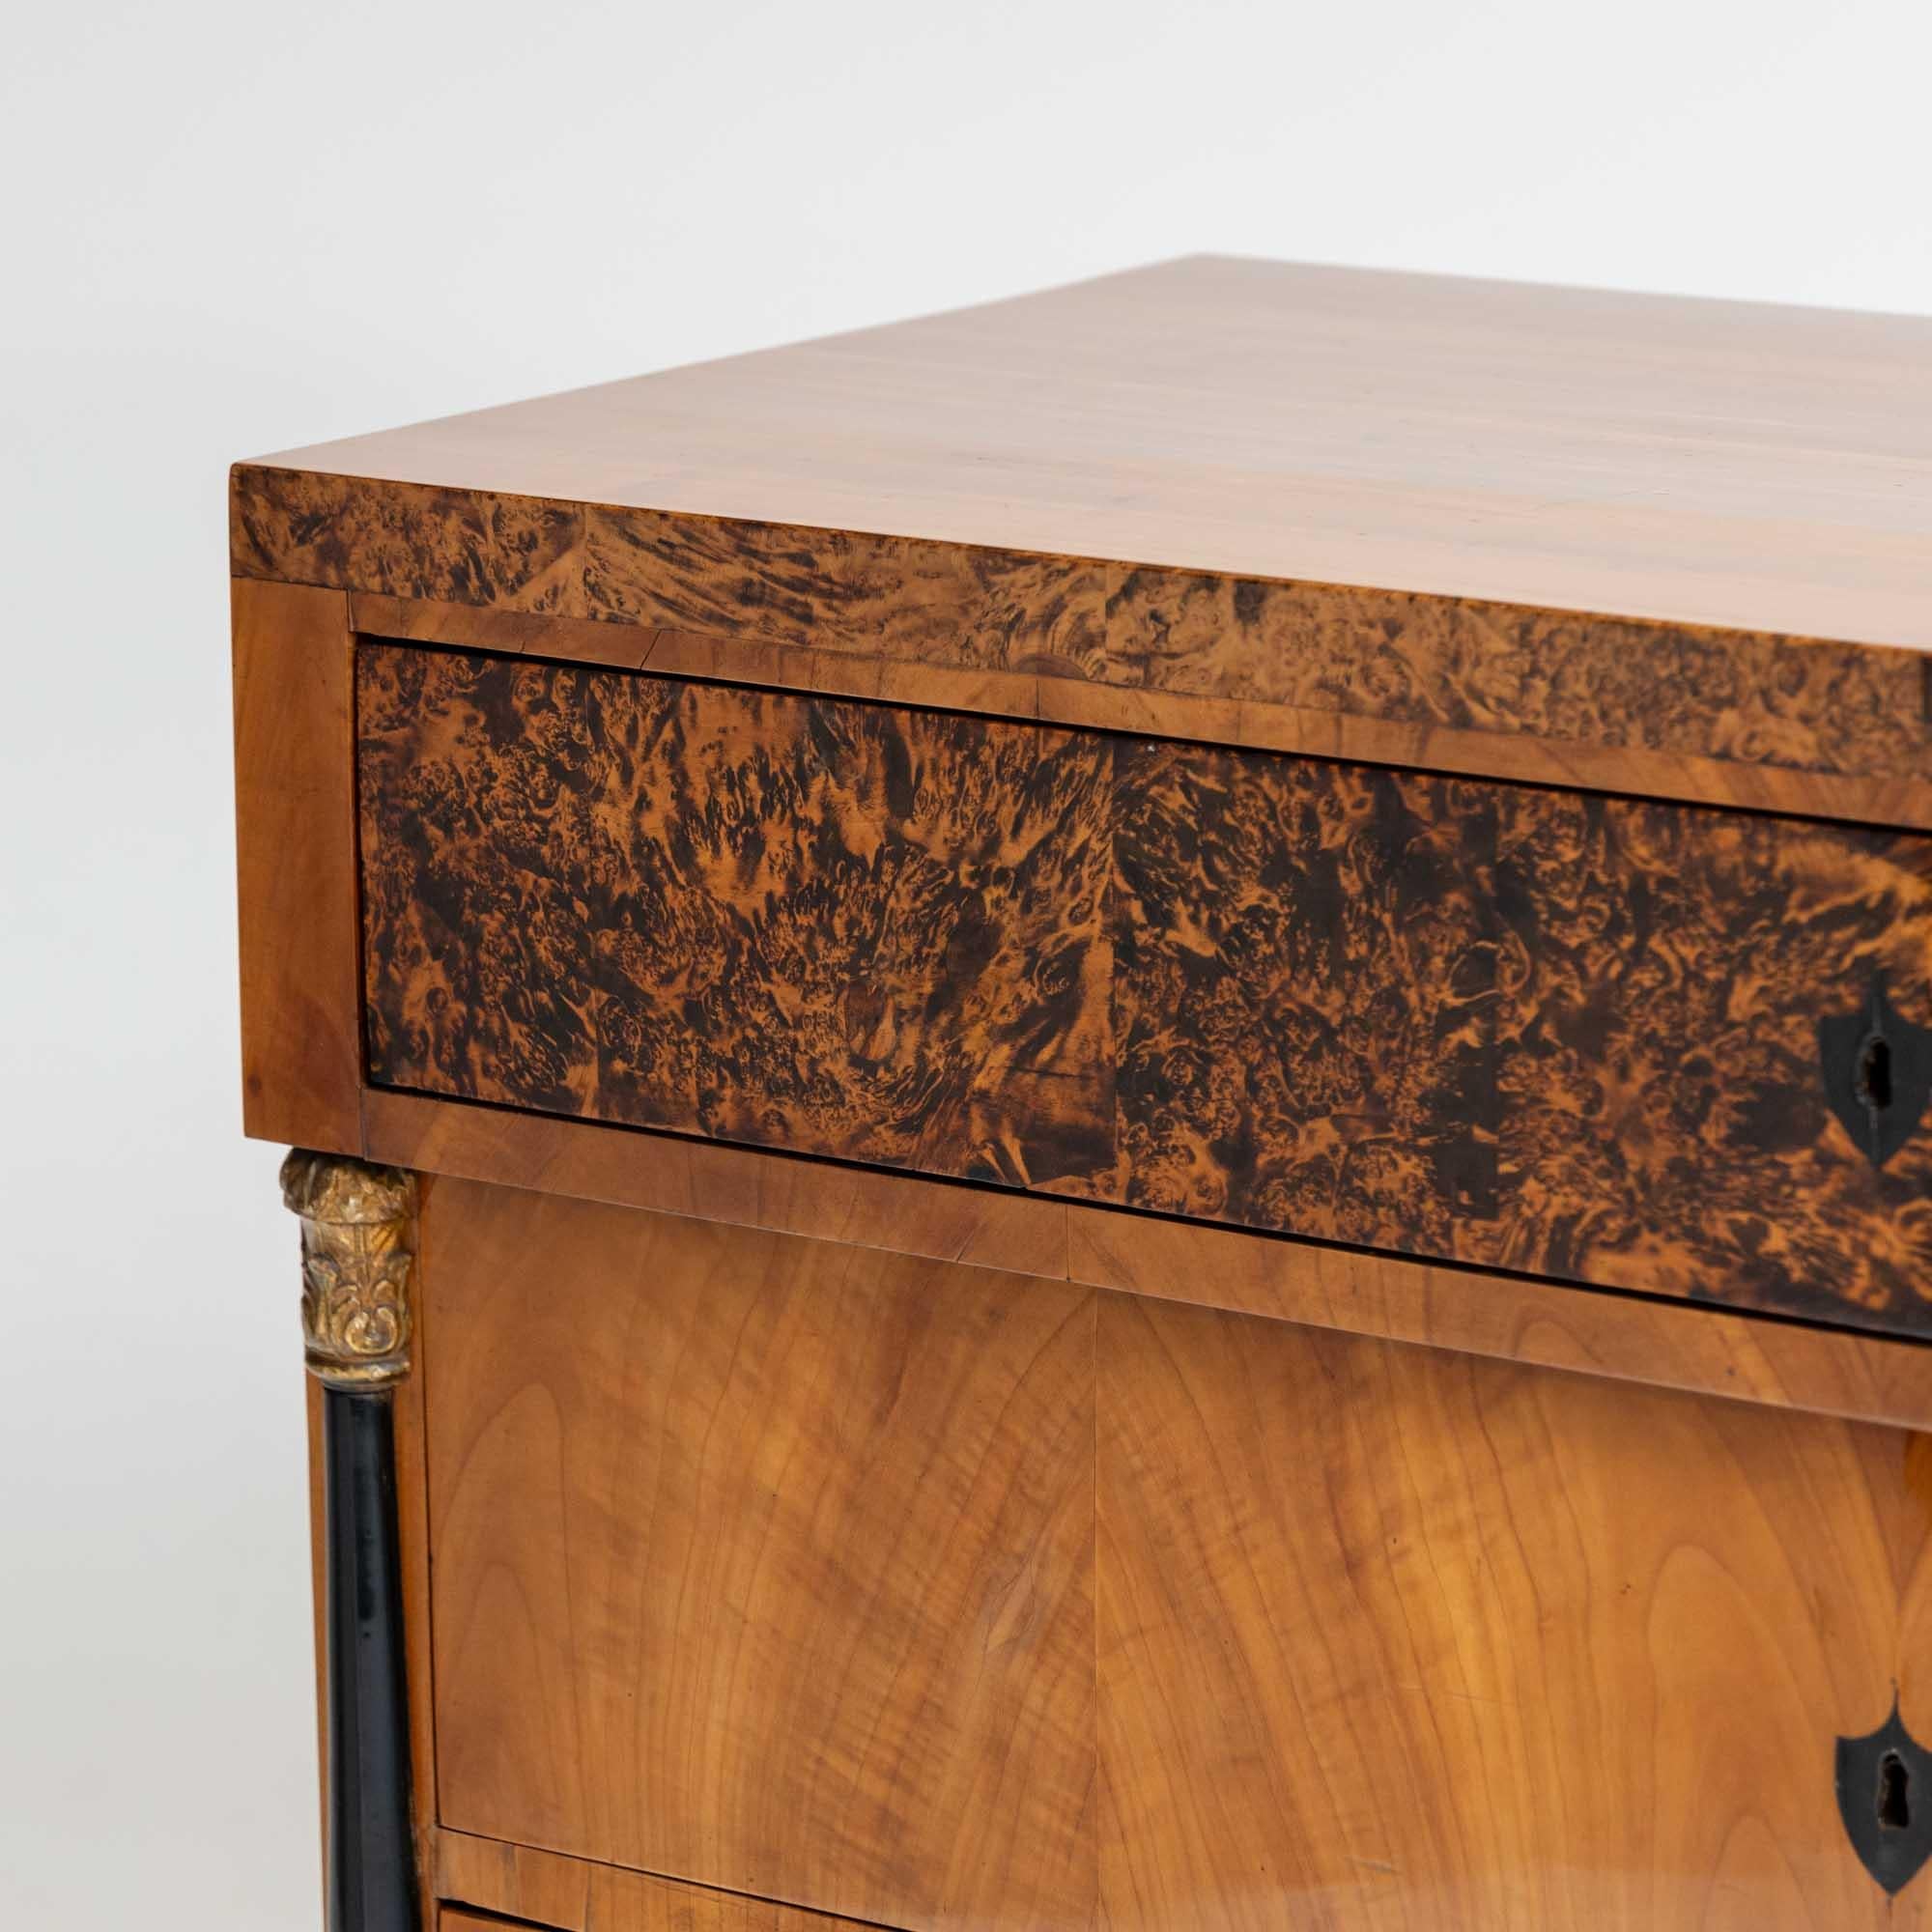 Ebonized Biedermeier chest of drawers, South Germany around 1820